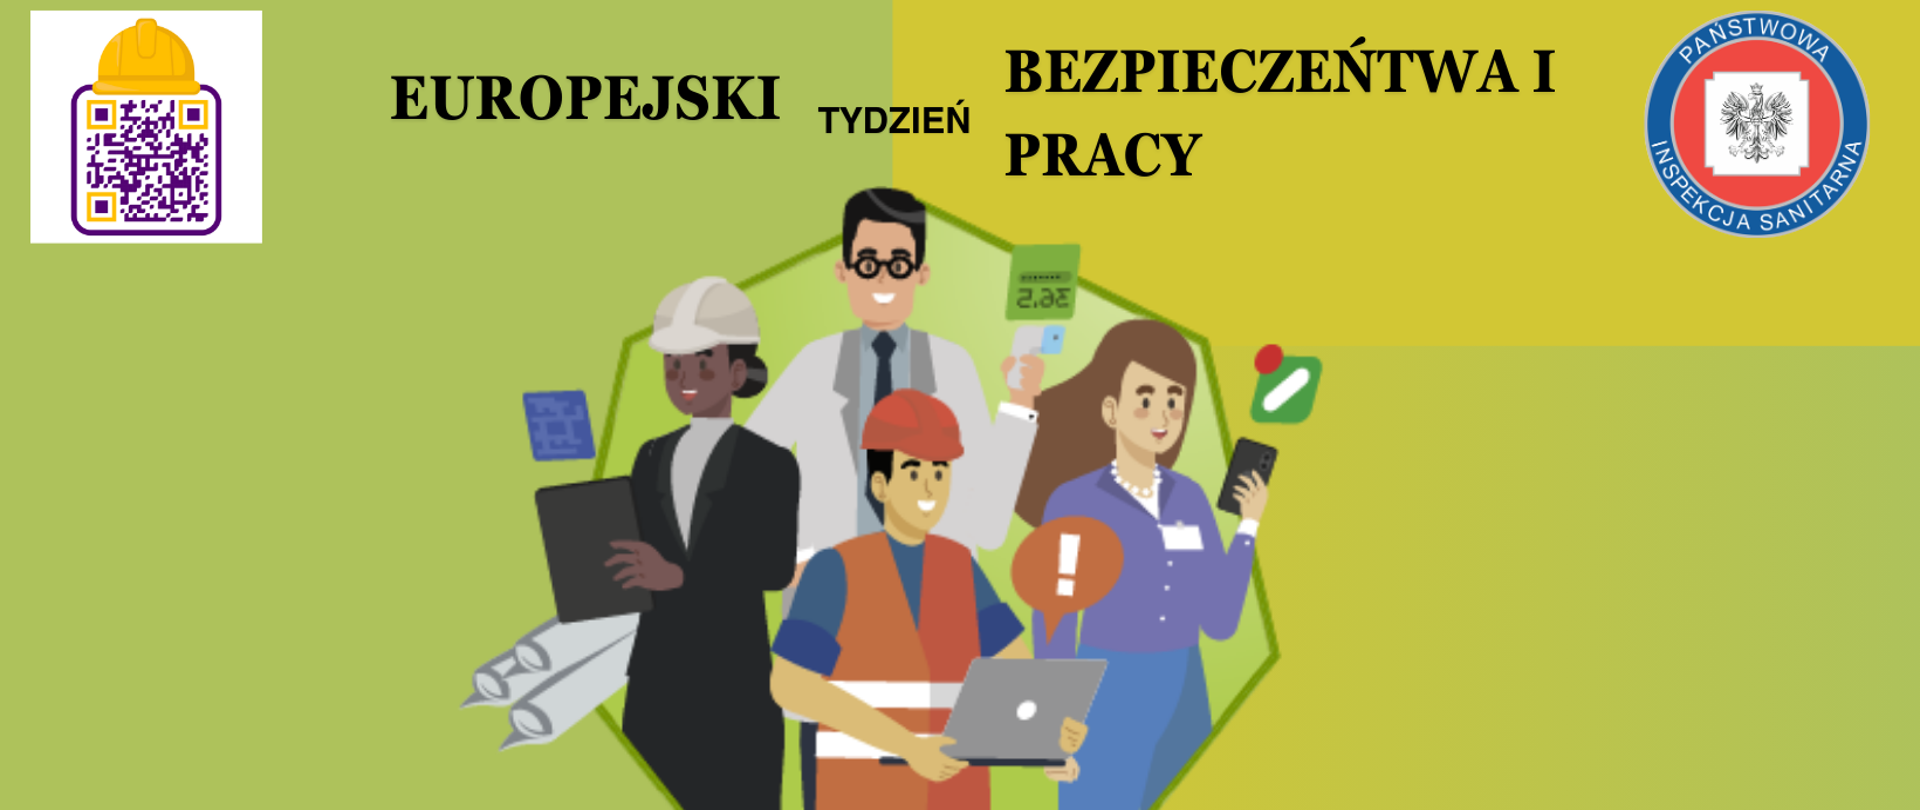 Infografika przedstawia pracowników różnych branż związane z bezpieczeństwem pracy w świecie cyfrowym